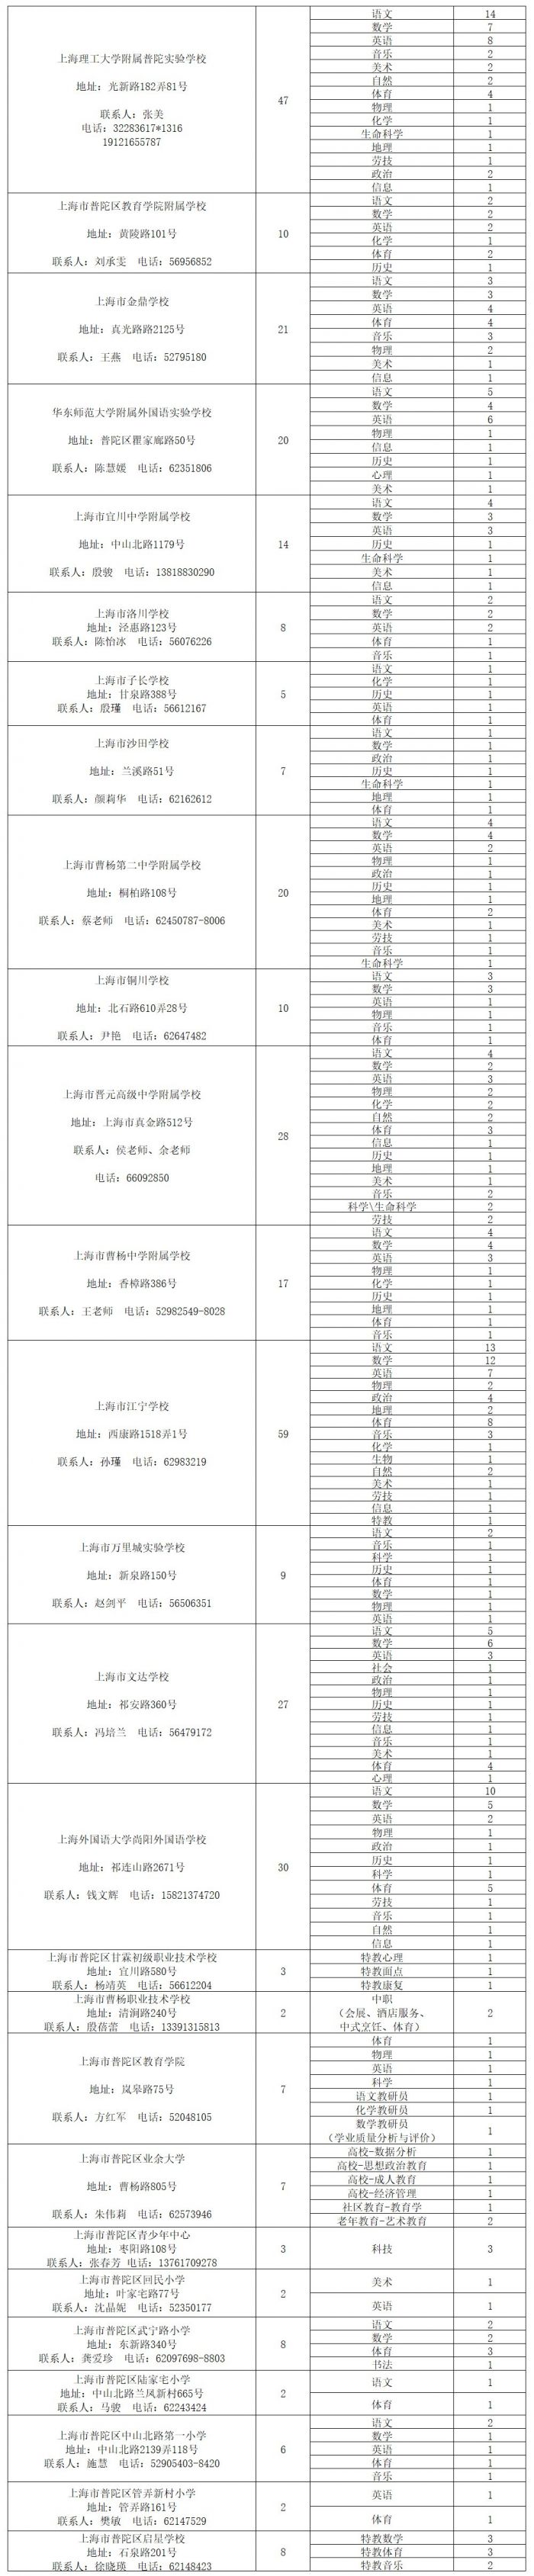 上海普陀区公开招聘1254名教师(附详情)